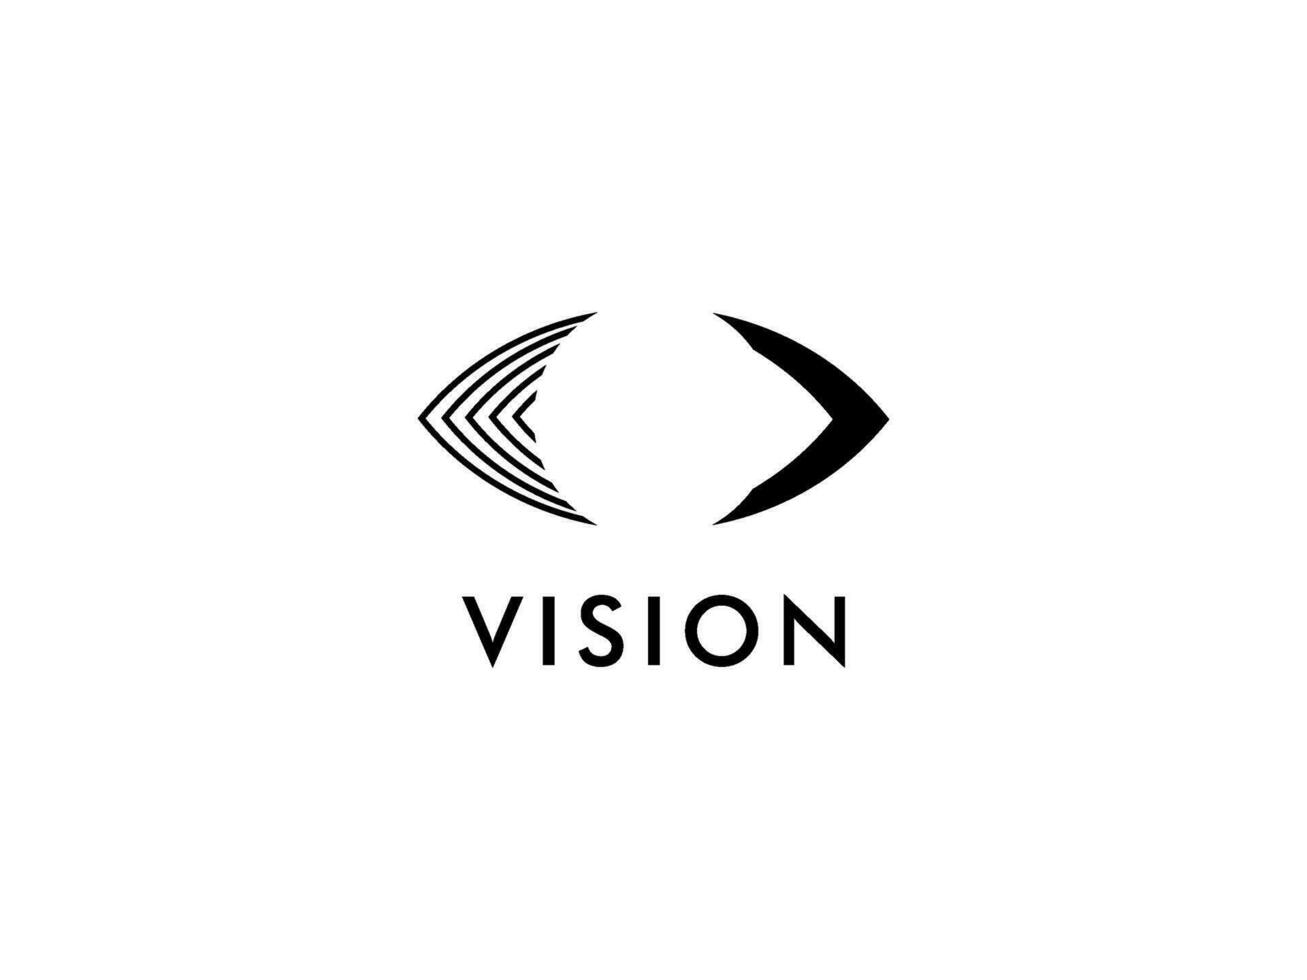 resumen ojo visión logo, creativo visión logo vector modelo